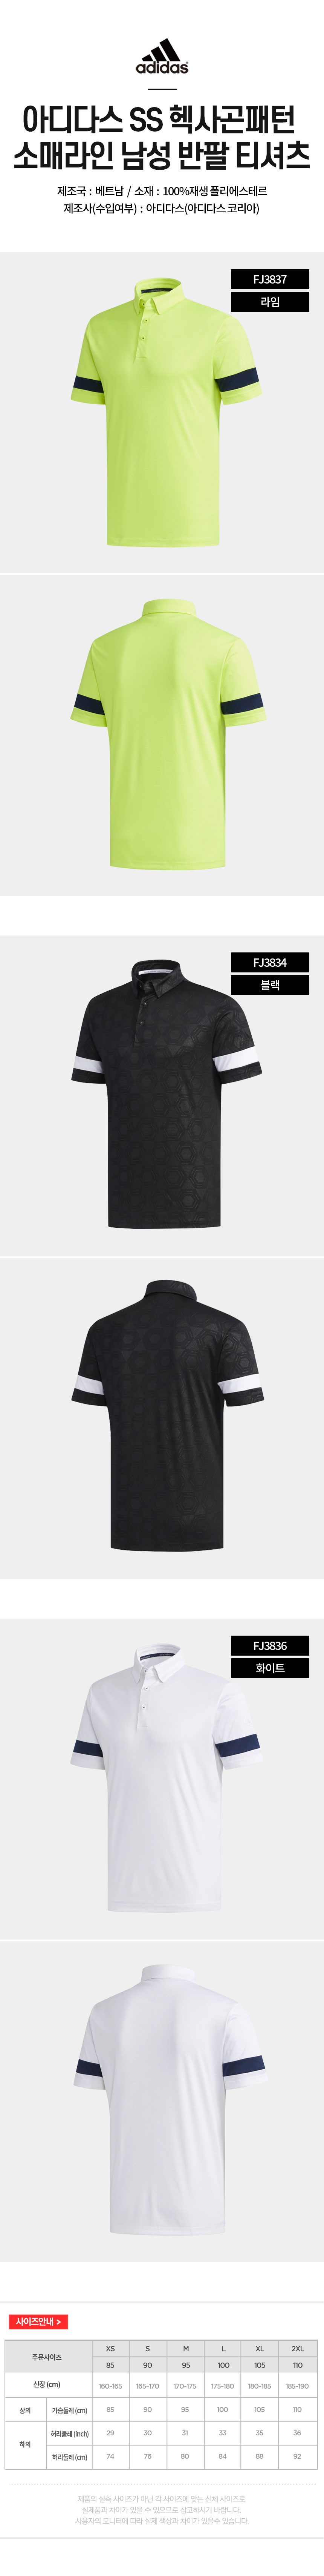 adidas_ss_hexagon_m_tshirt_22.jpg